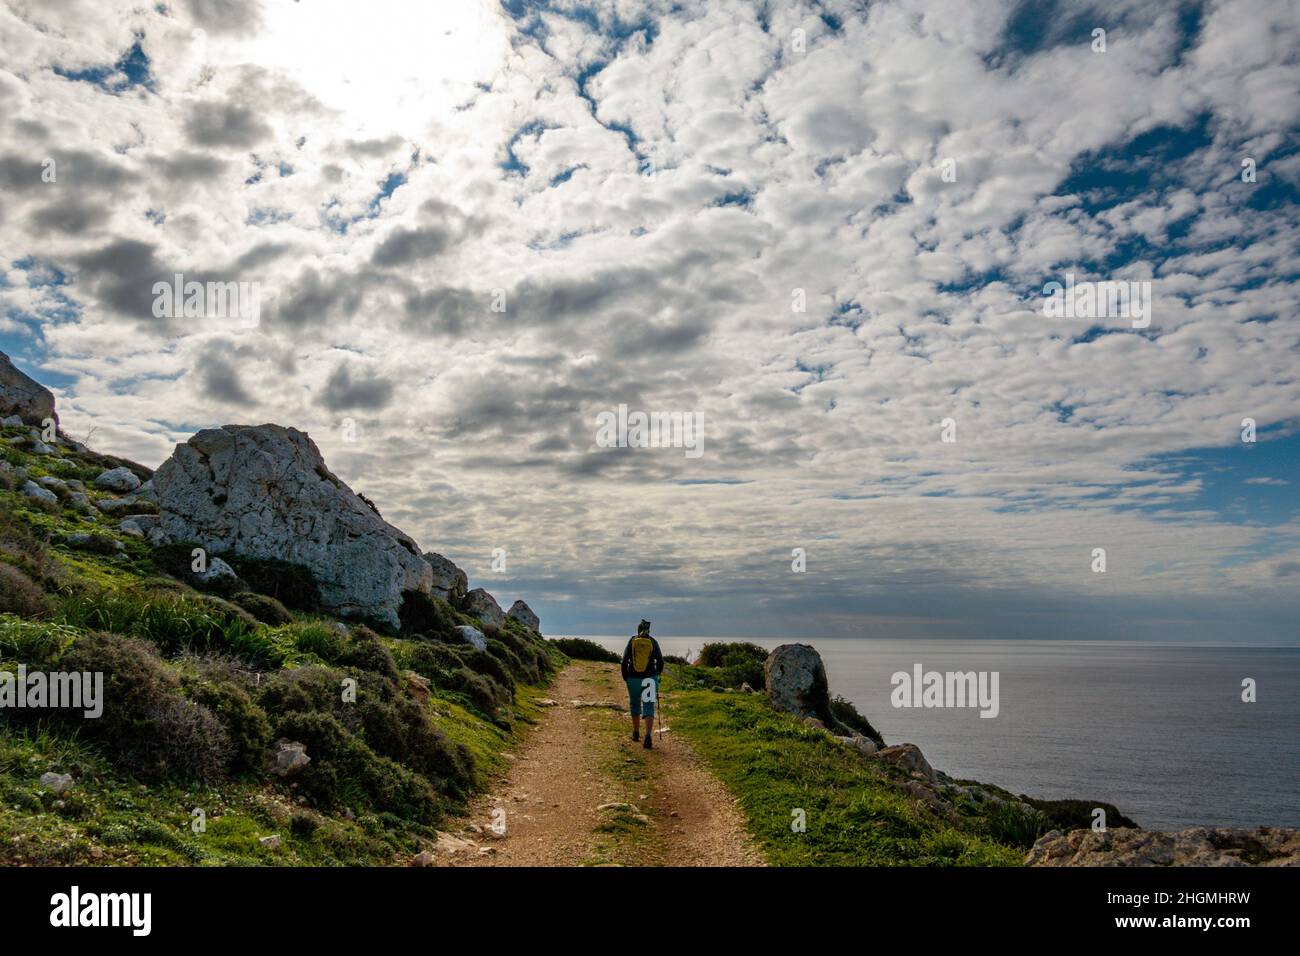 Capo Greko, Cipro orientale, Cipro, Mar Mediterraneo in inverno Foto Stock